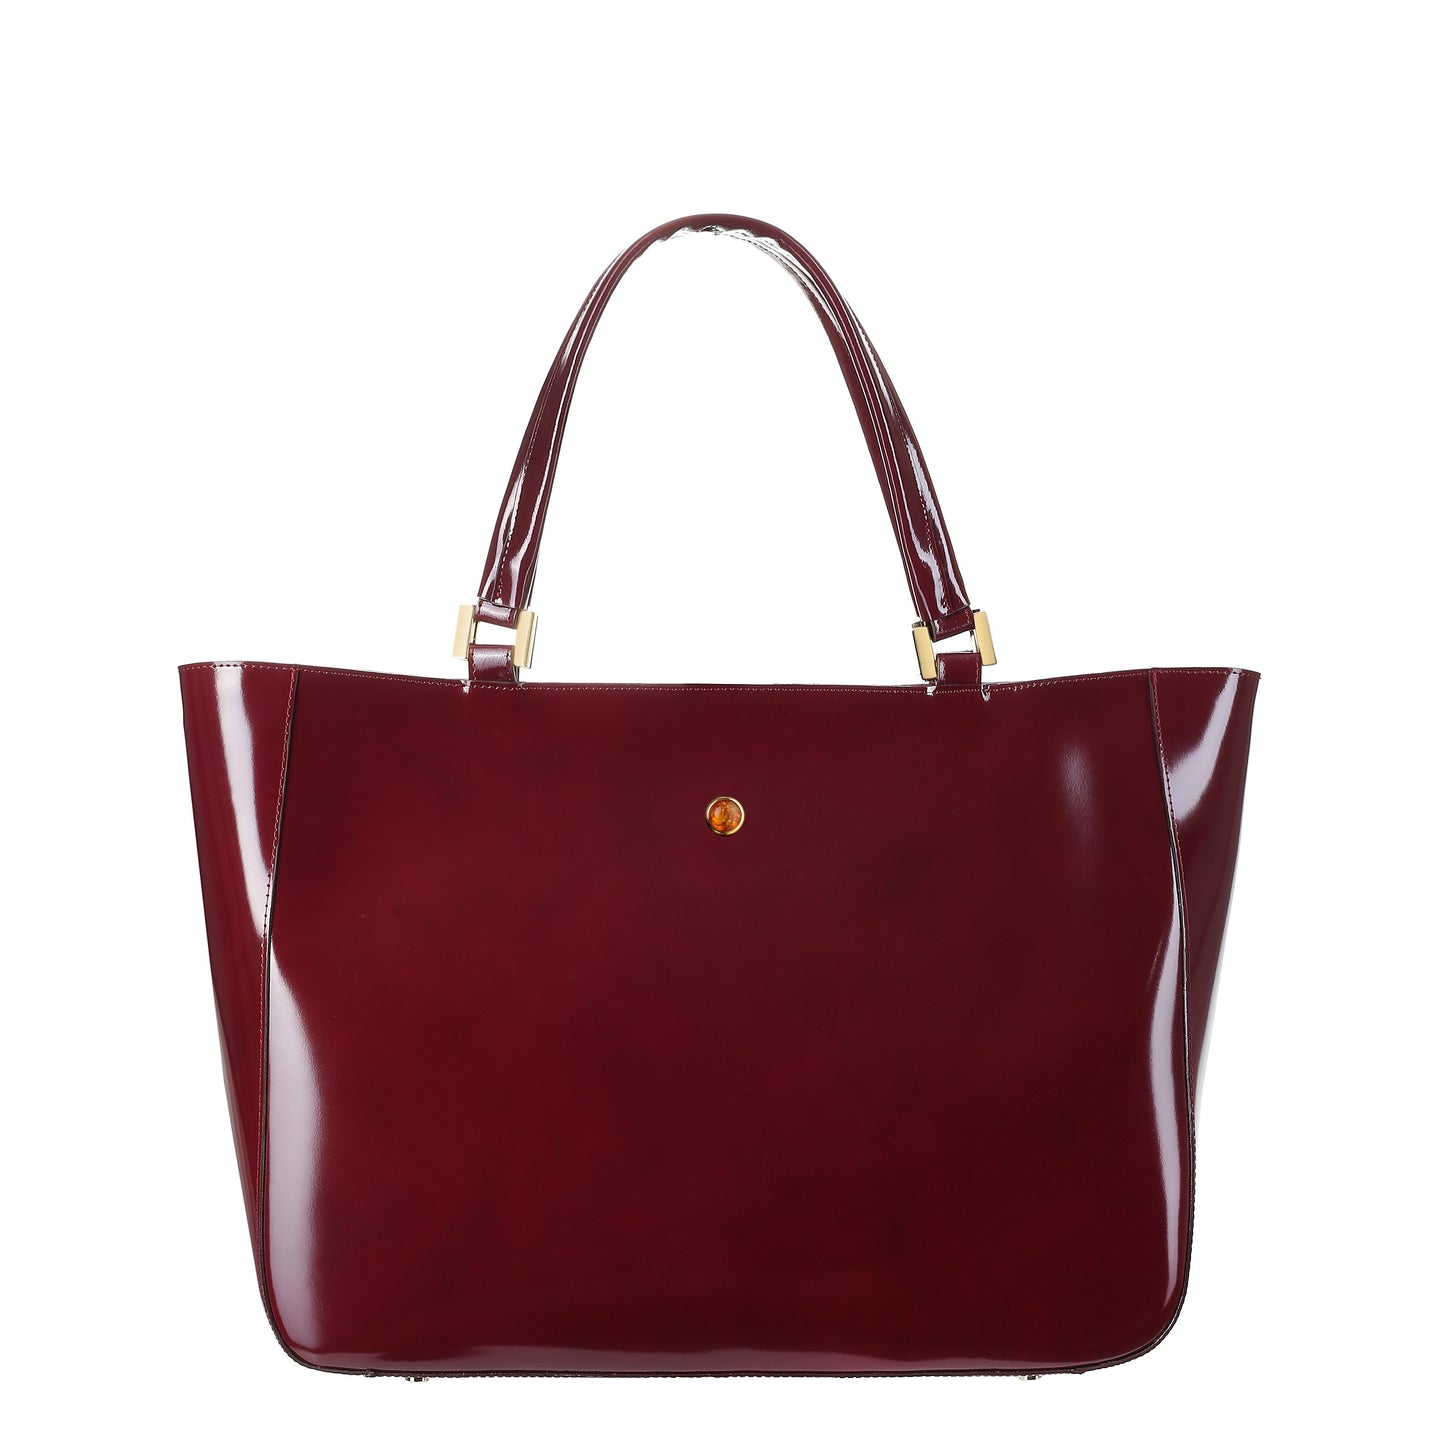 MAMMA SPECCHIO CLARET women's leather handbag